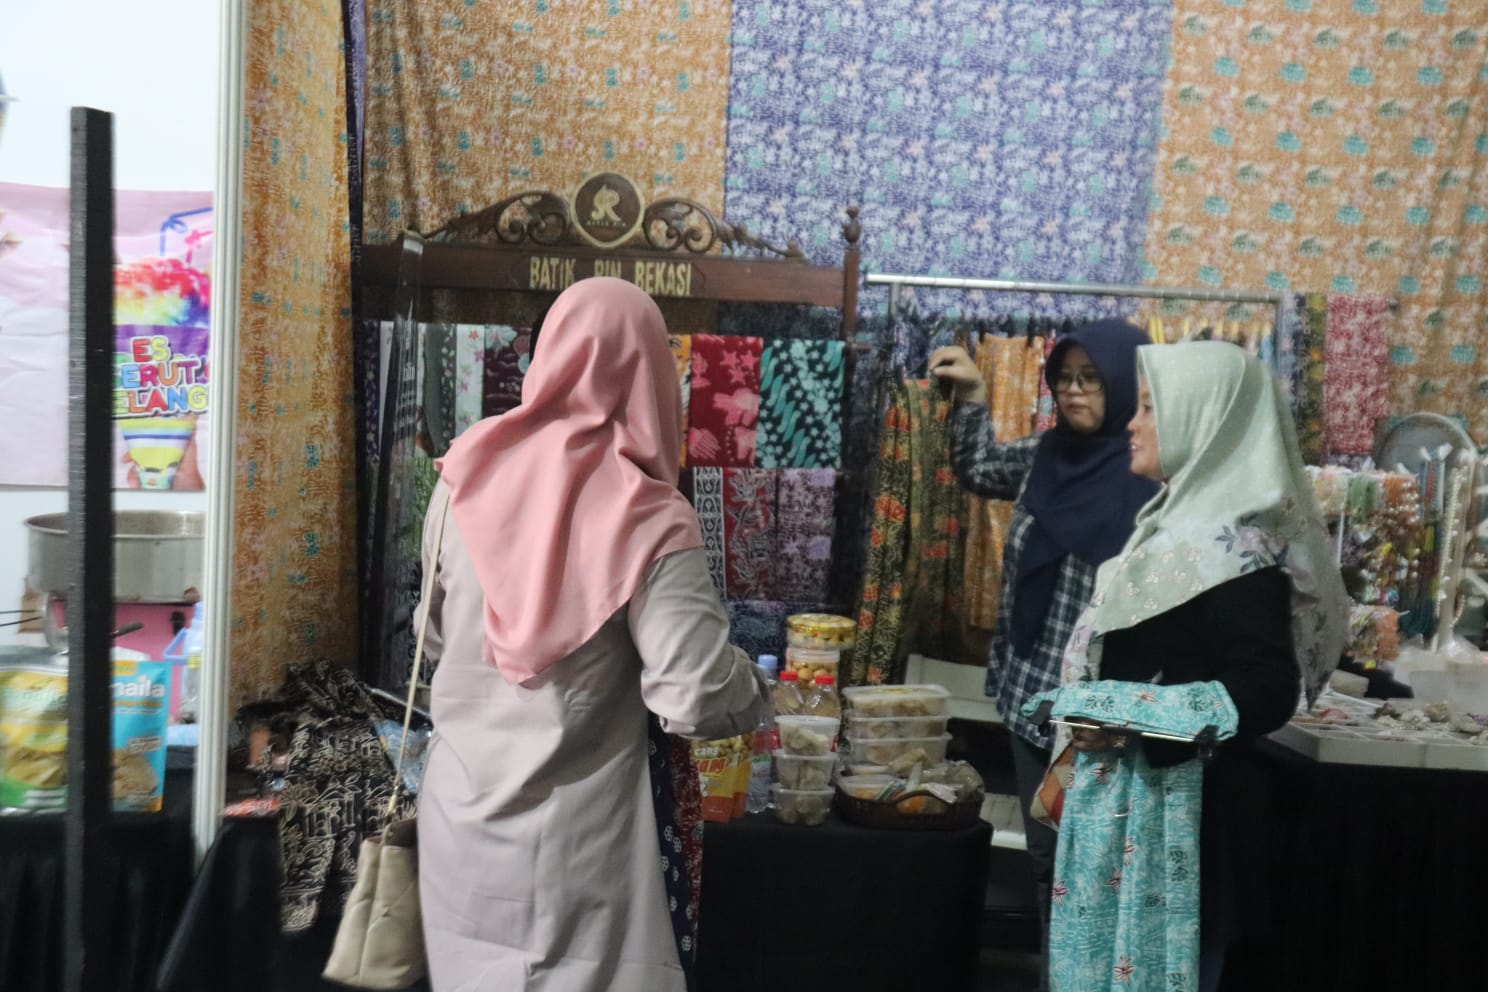 Berkah MTQ, Stand UMKM Batik Bekasi Dibanjiri Pembeli